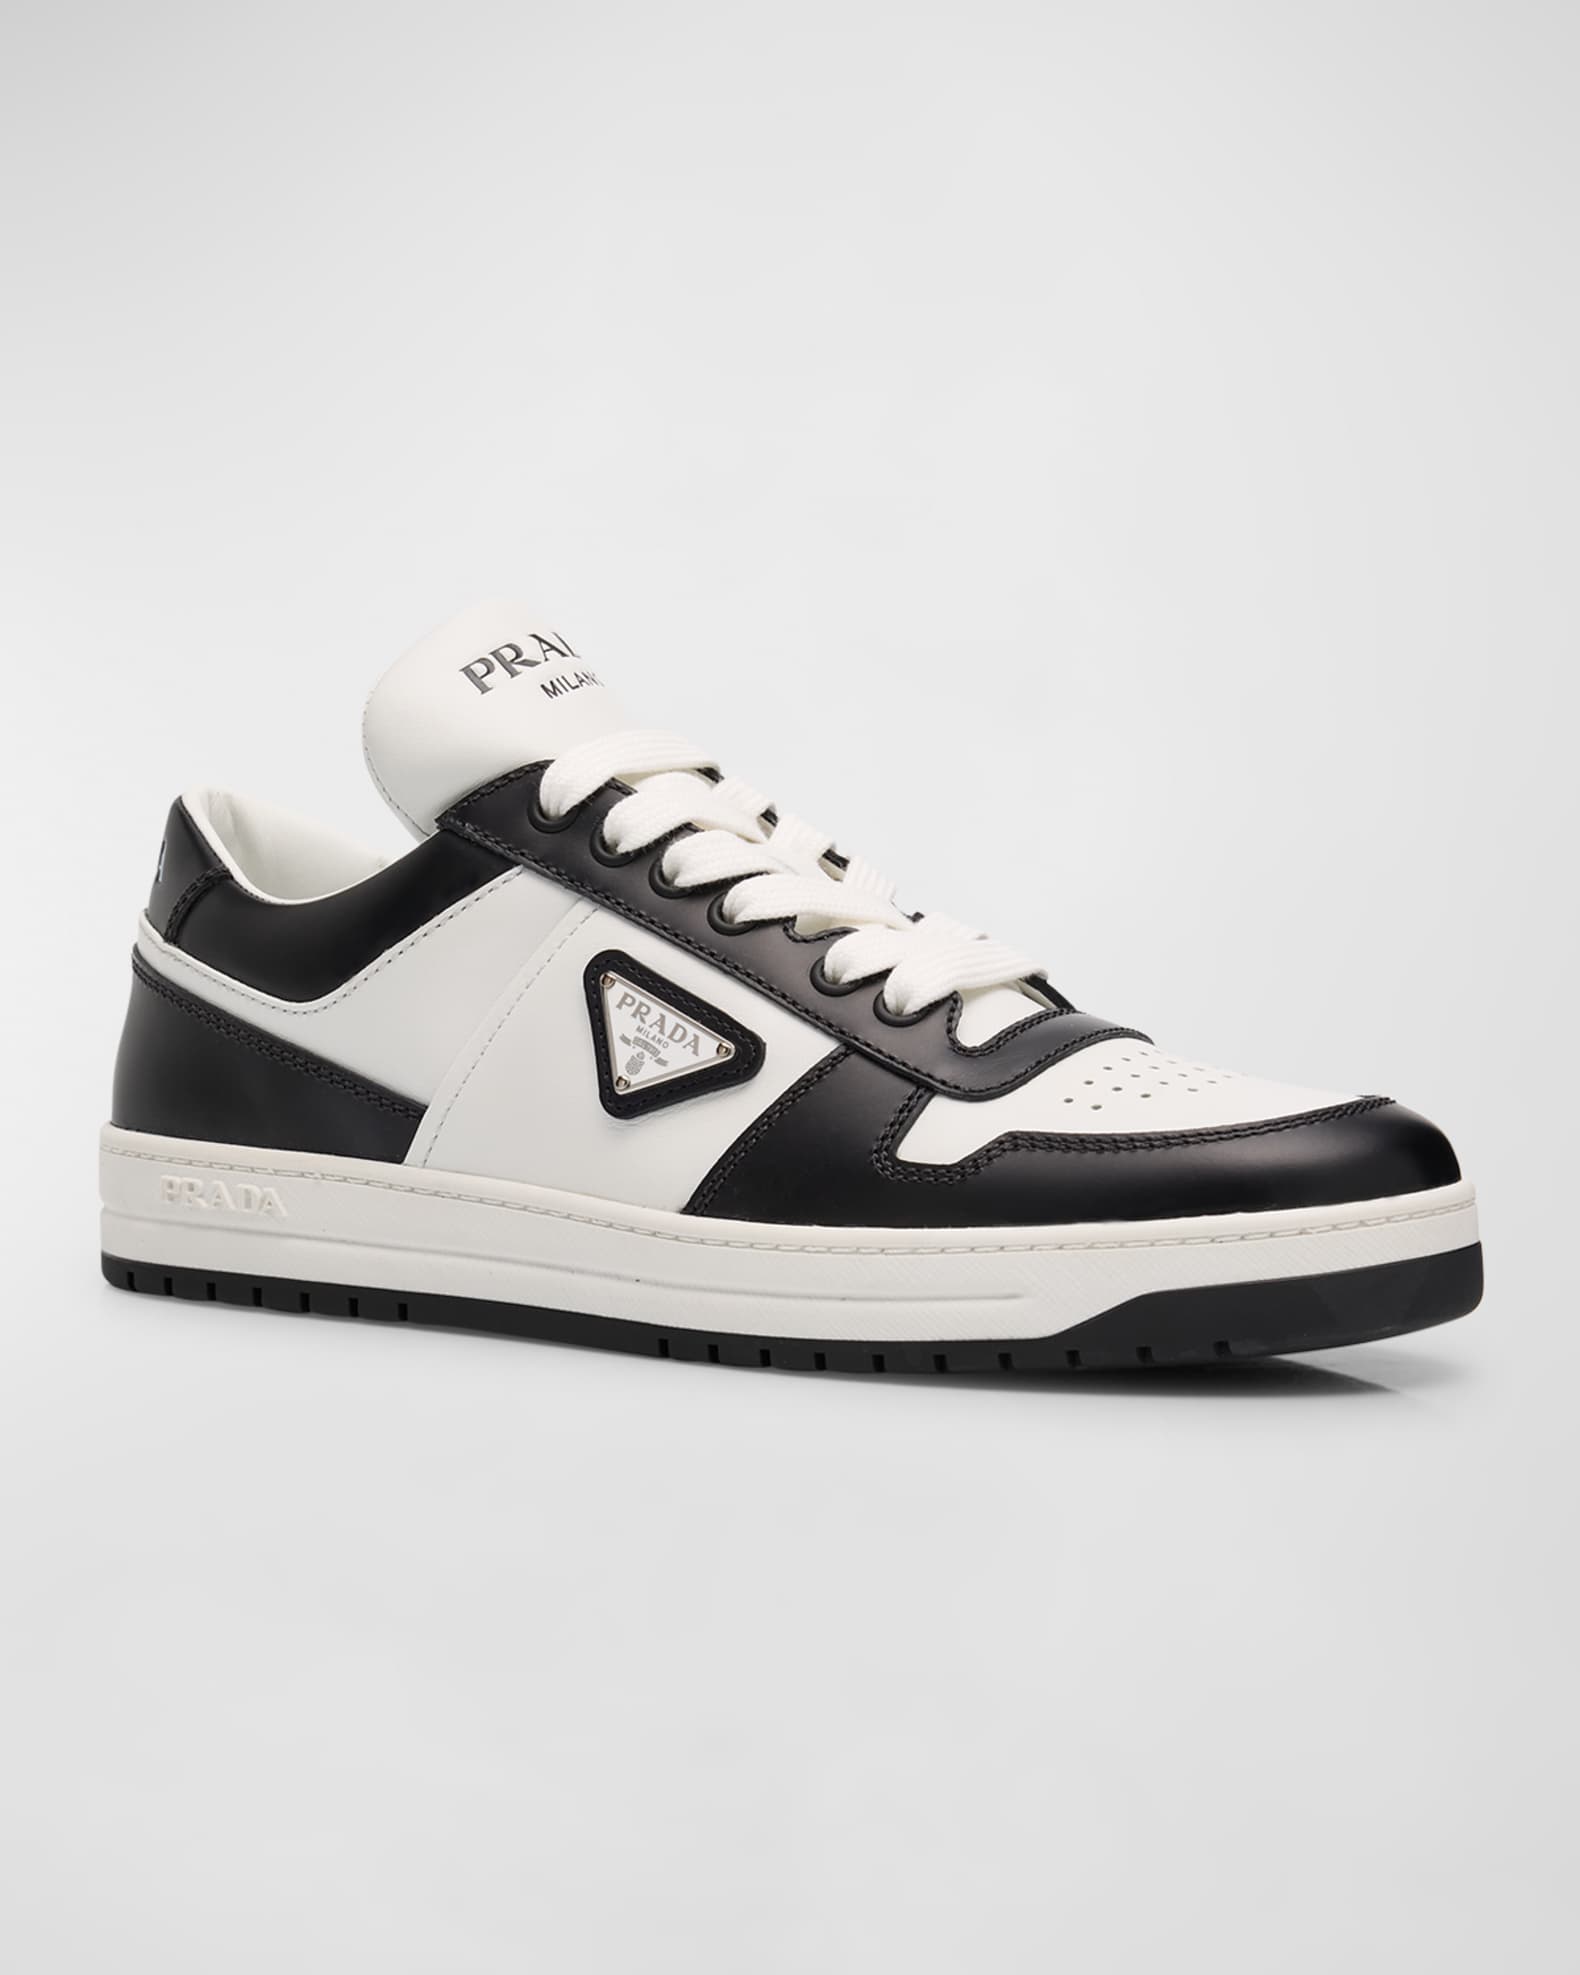 Prada Bicolor Leather Low-Top Court Sneakers | Neiman Marcus